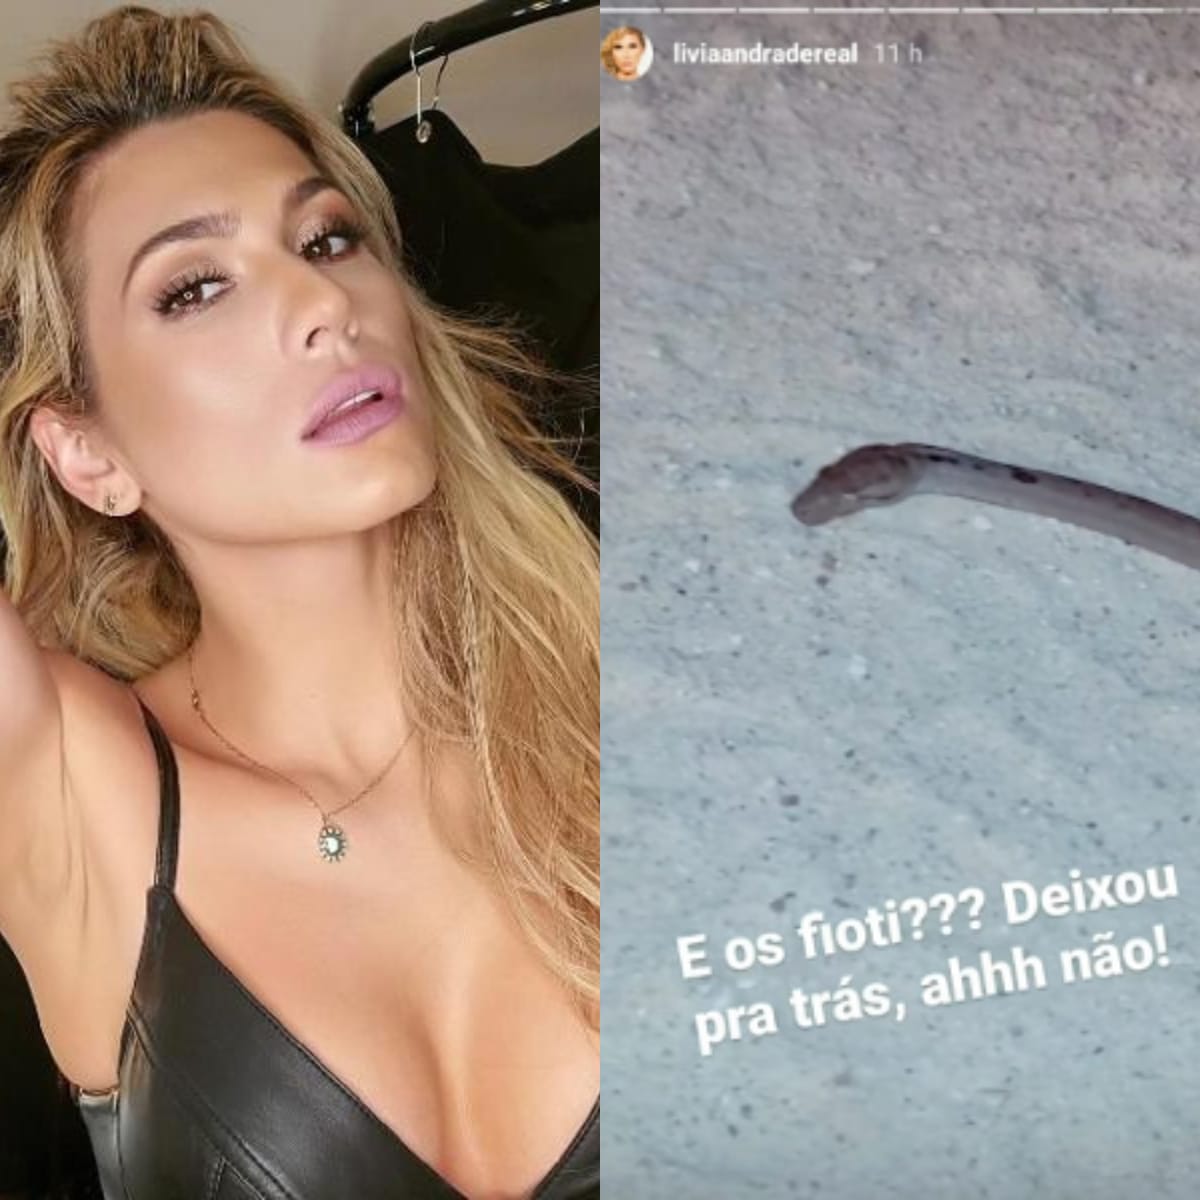 Lívia Andrade publica foto de cobra em seu Instagram (Foto: Reprodução)